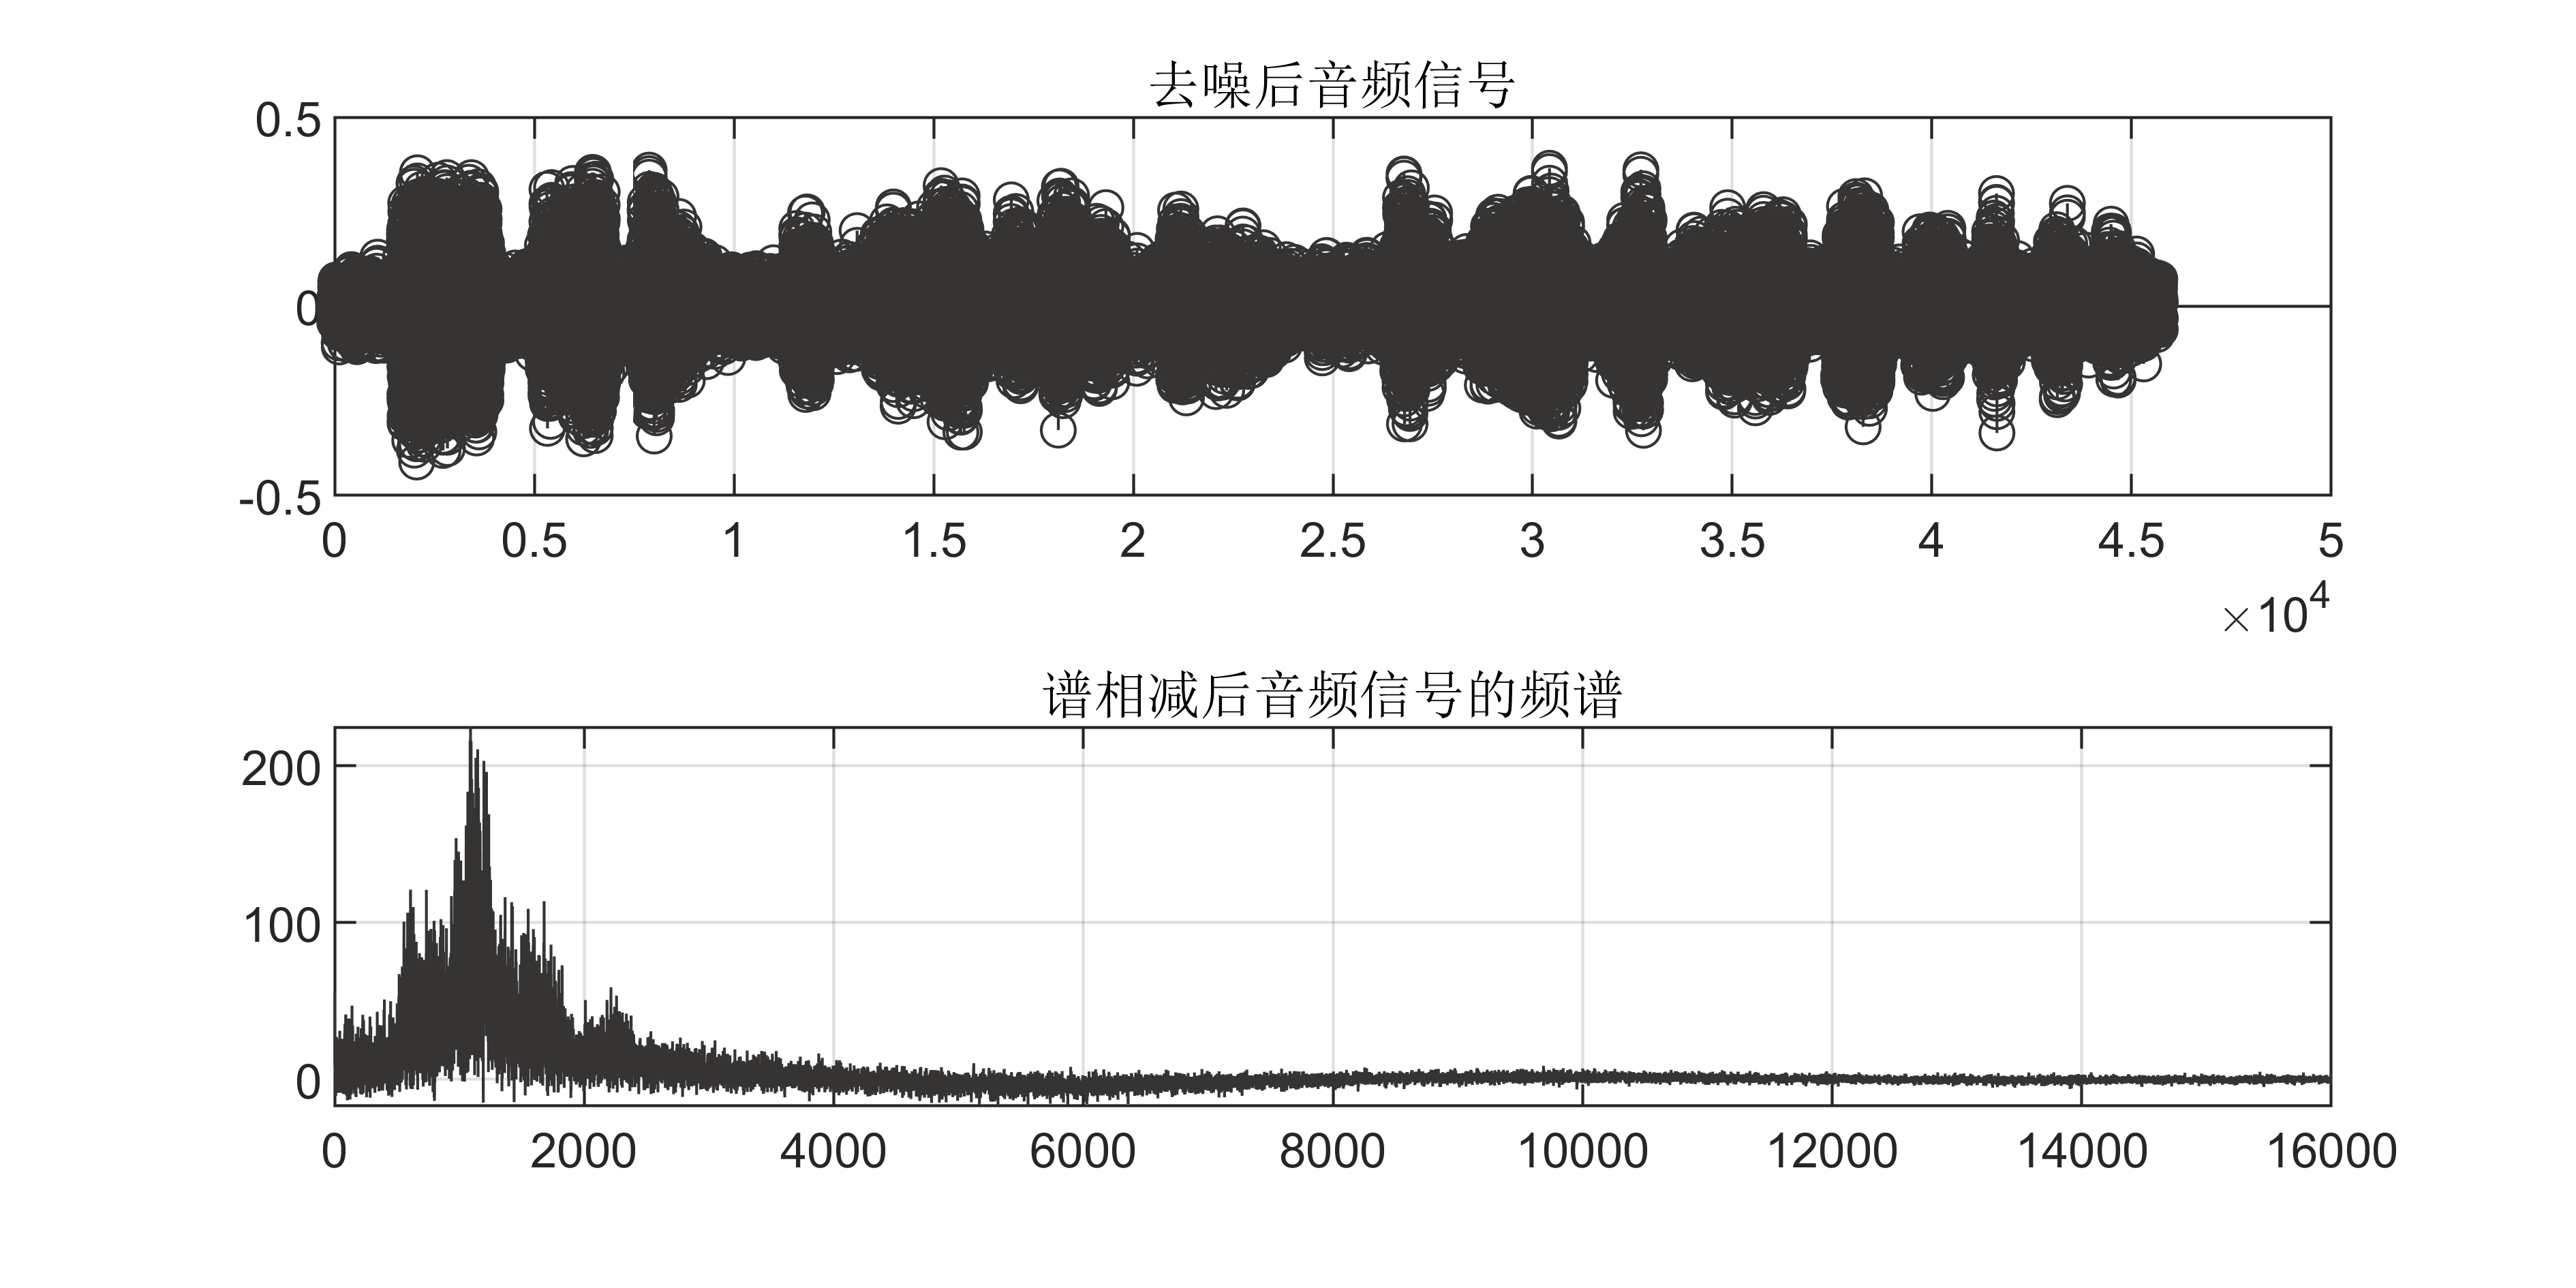 【MATLAB】语音信号识别与处理：移动中位数滤波算法去噪及谱相减算法呈现频谱